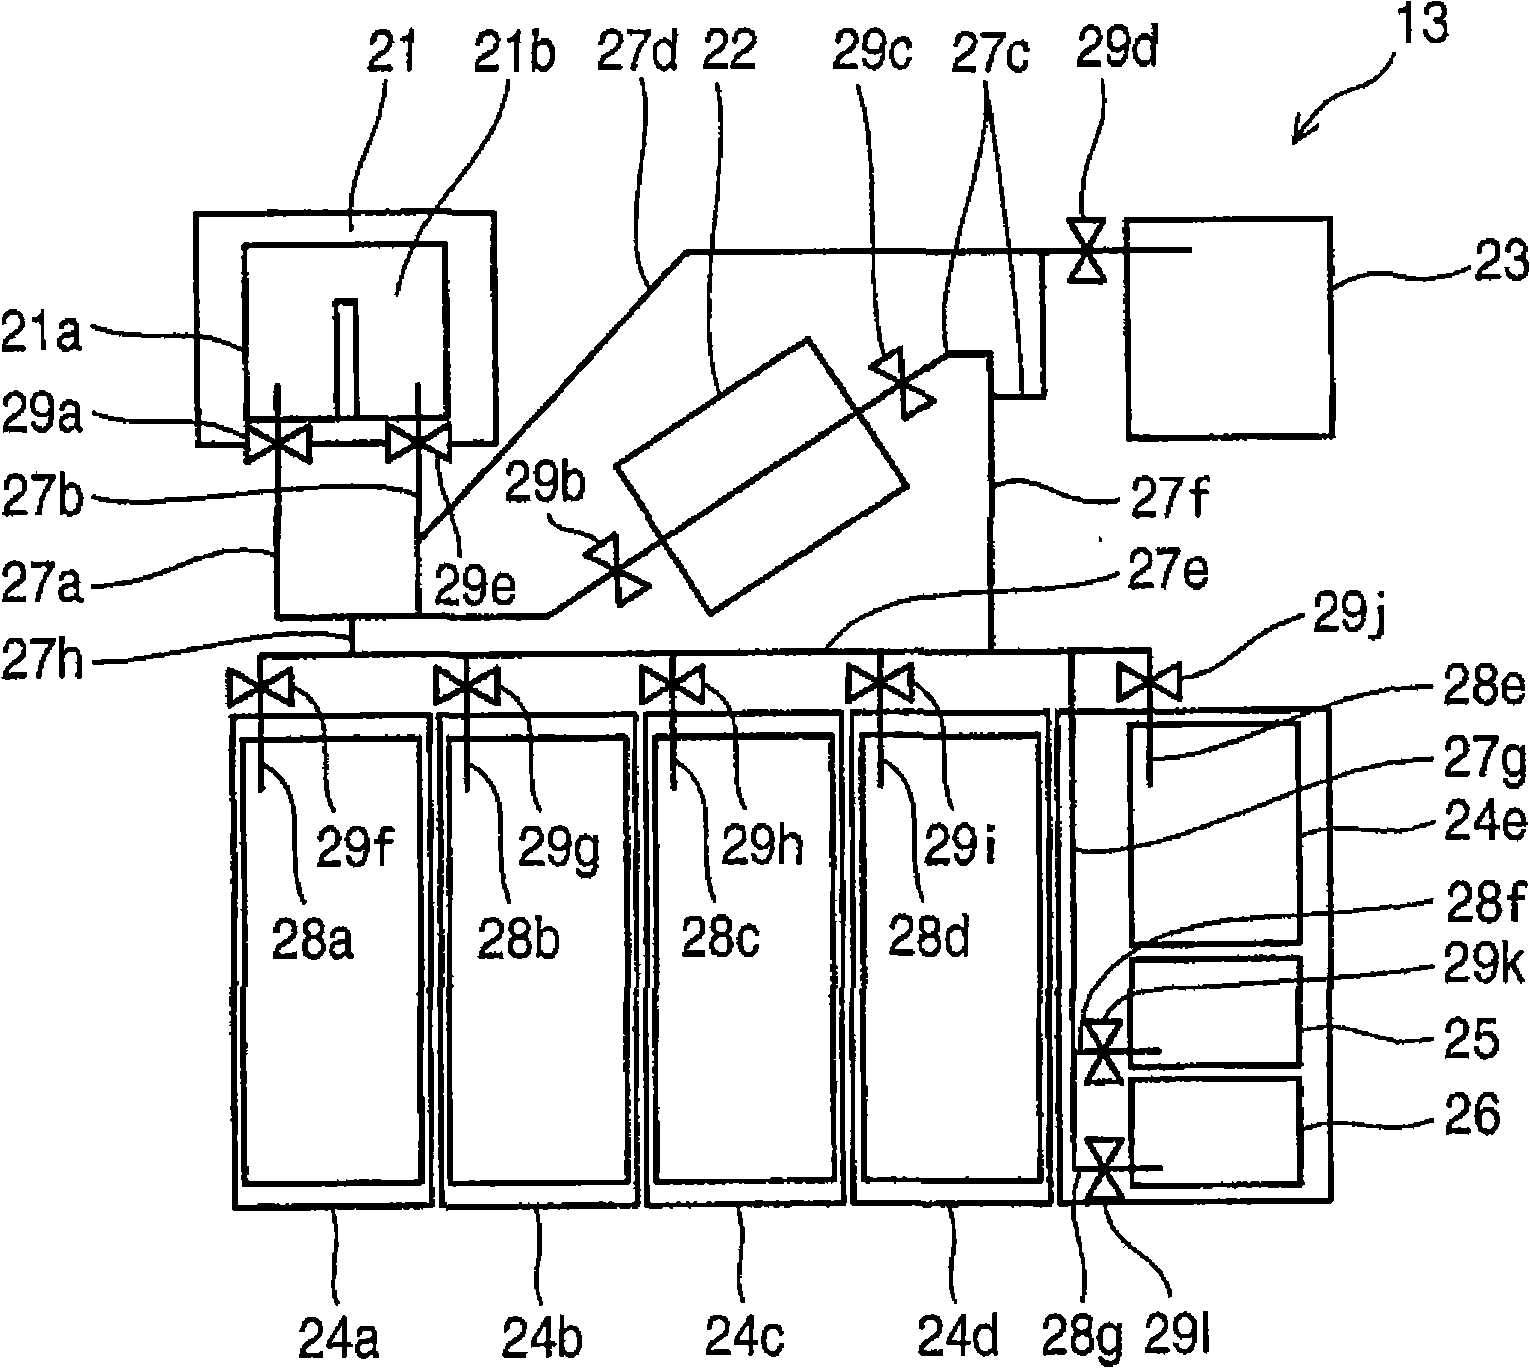 Paper processing apparatus